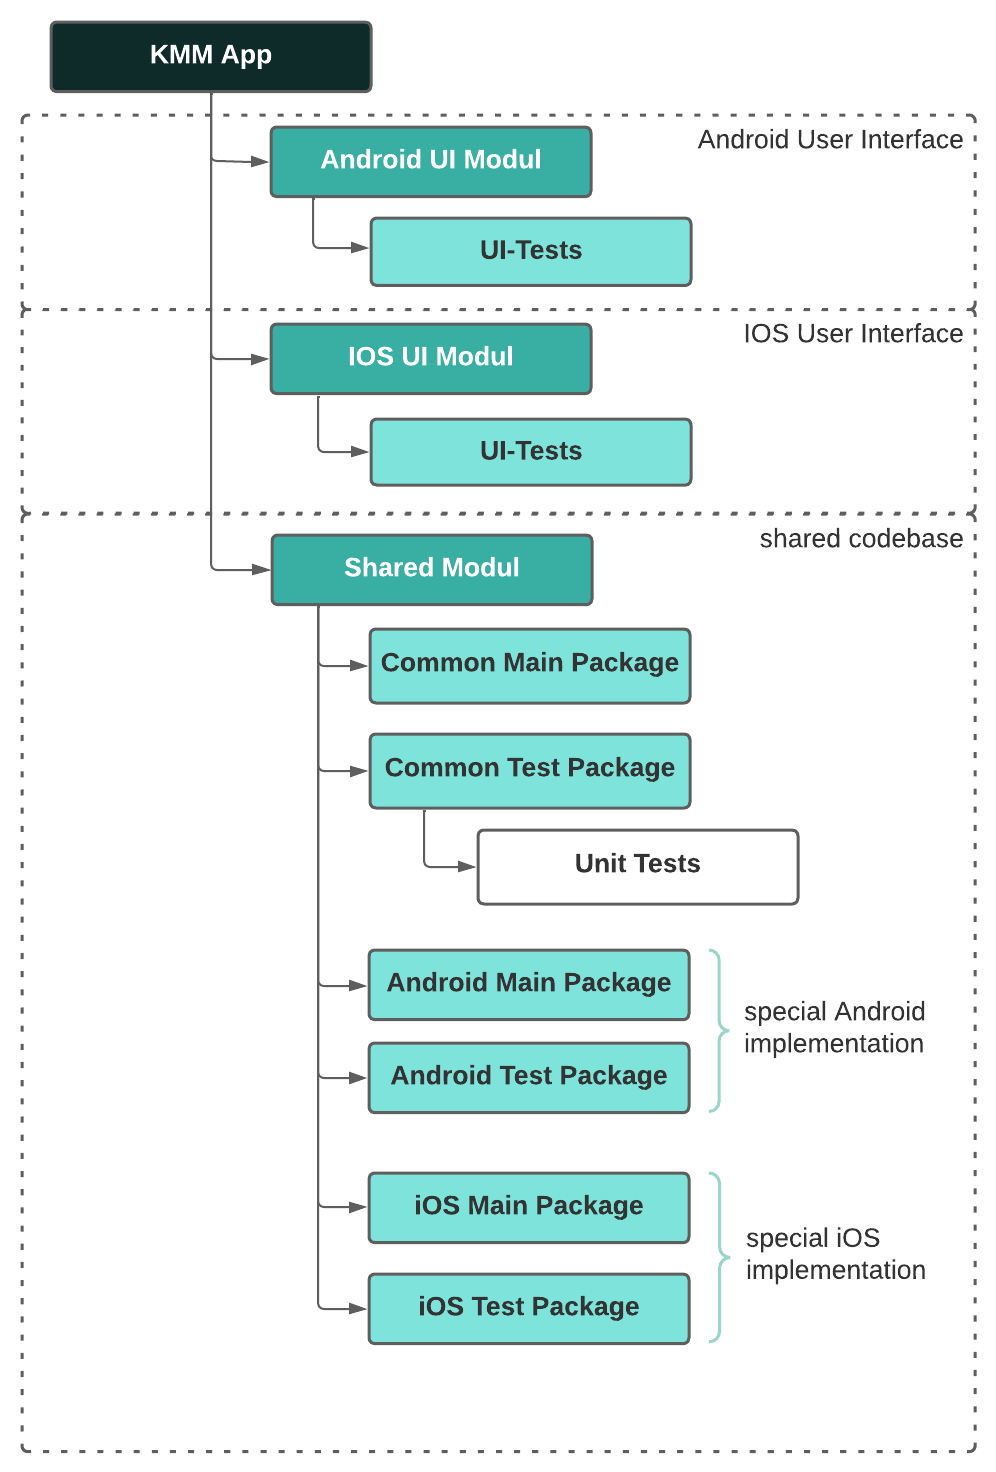 Bild zeigt wie die Struktur einer KMM App ist.